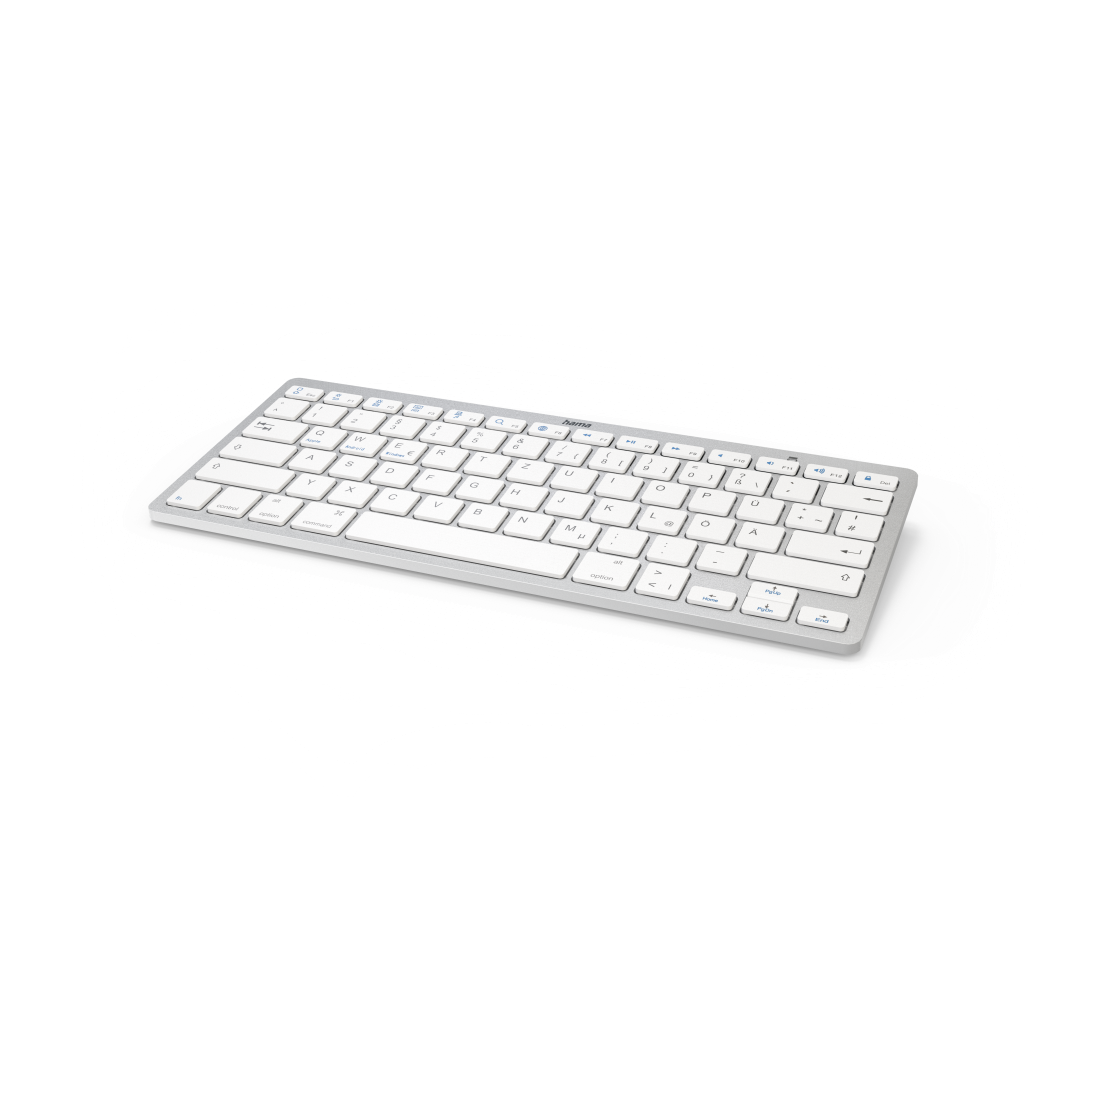 Bluetooth®-Tastatur "KEY4ALL X510", Silber/Weiß, QWERTZ | Hama